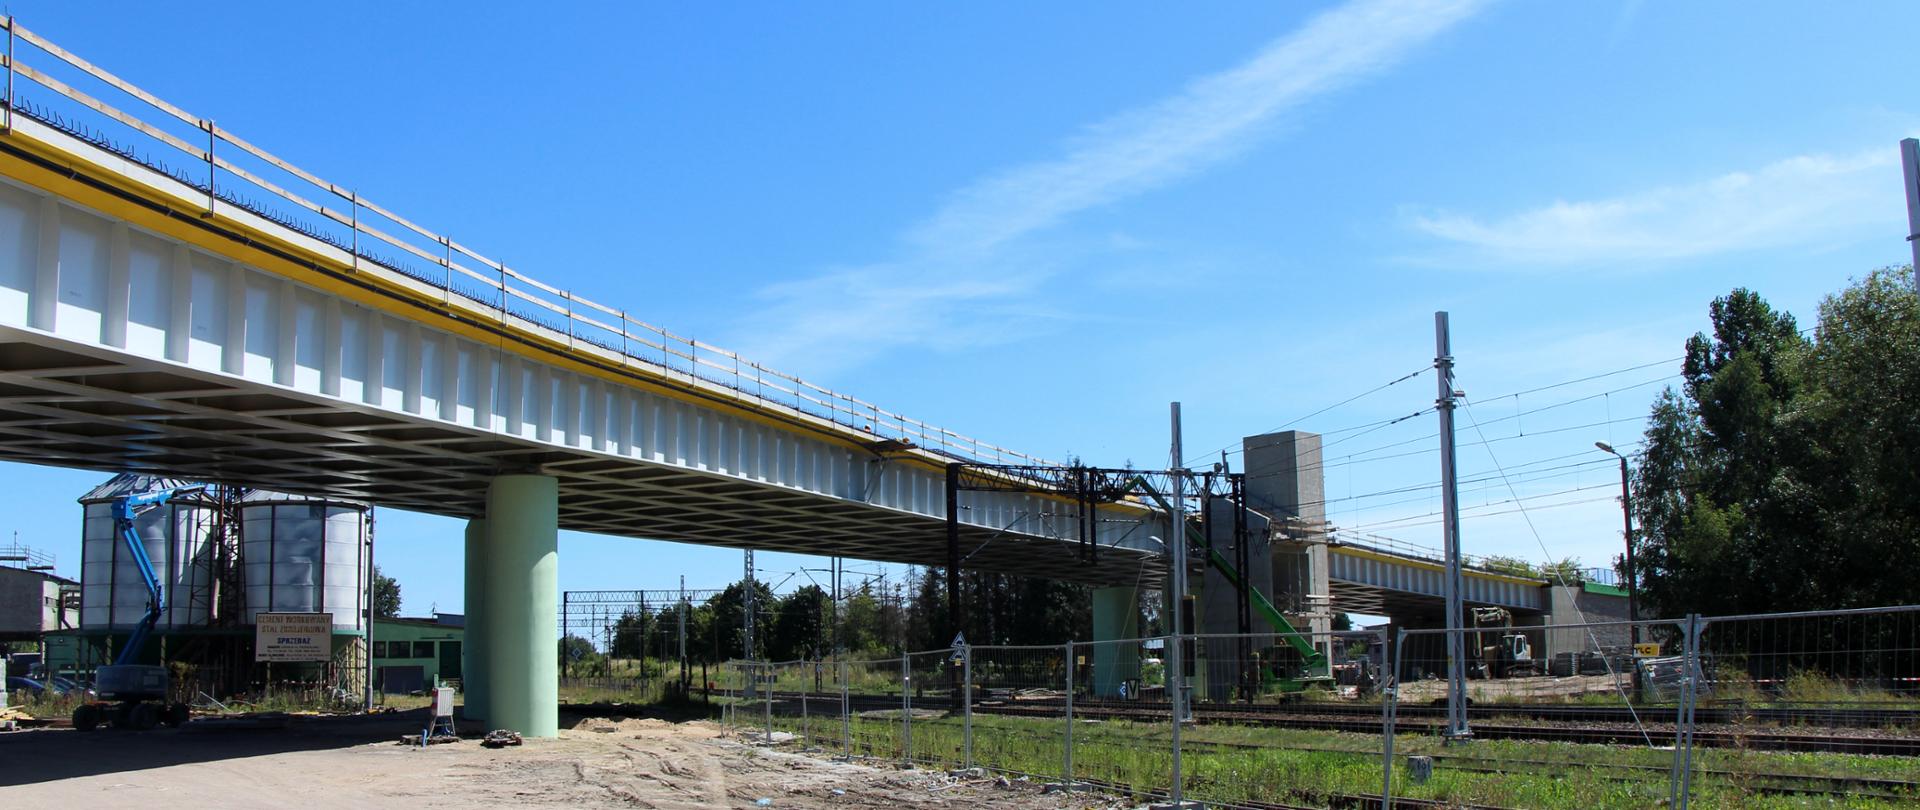 Nowy wiadukt drogowy nad torami w Sokółce